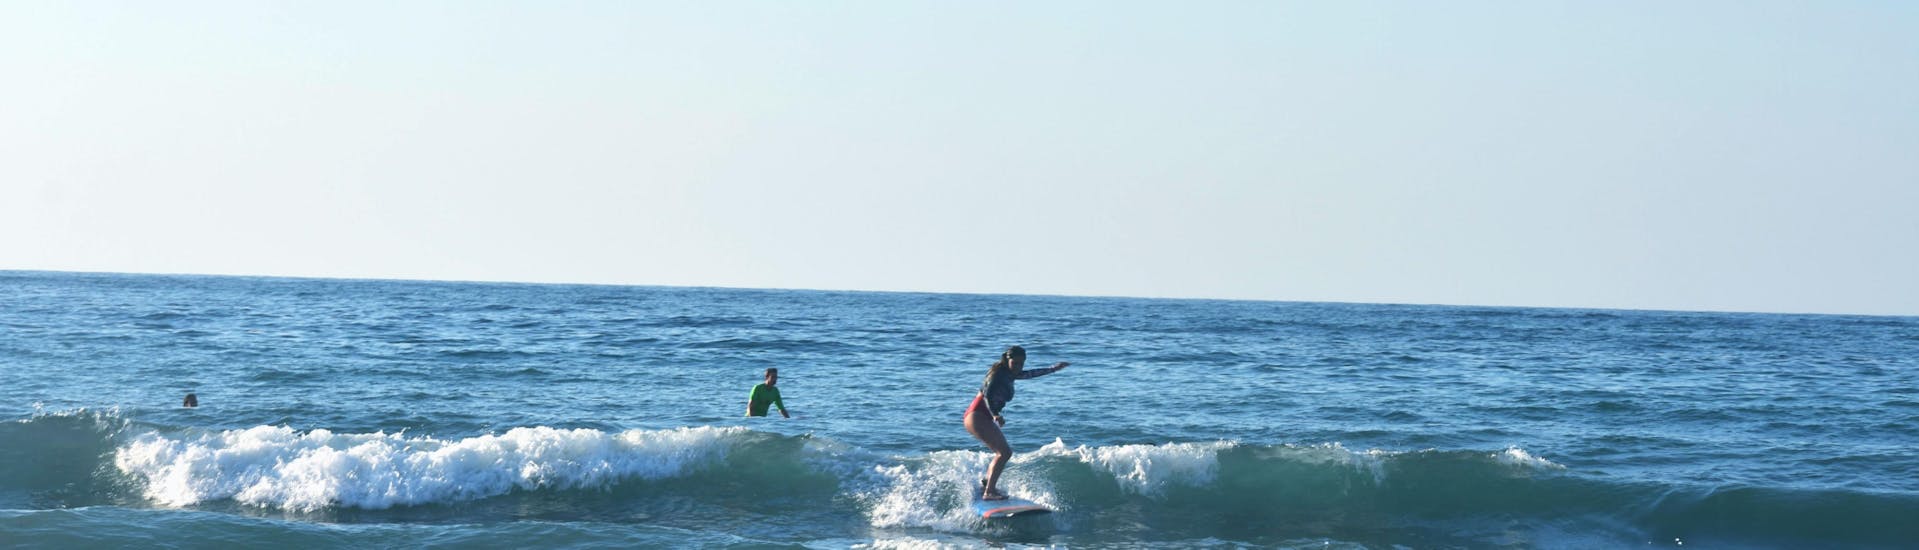 Curso de Surf en Chania a partir de 10 años para todos los niveles.